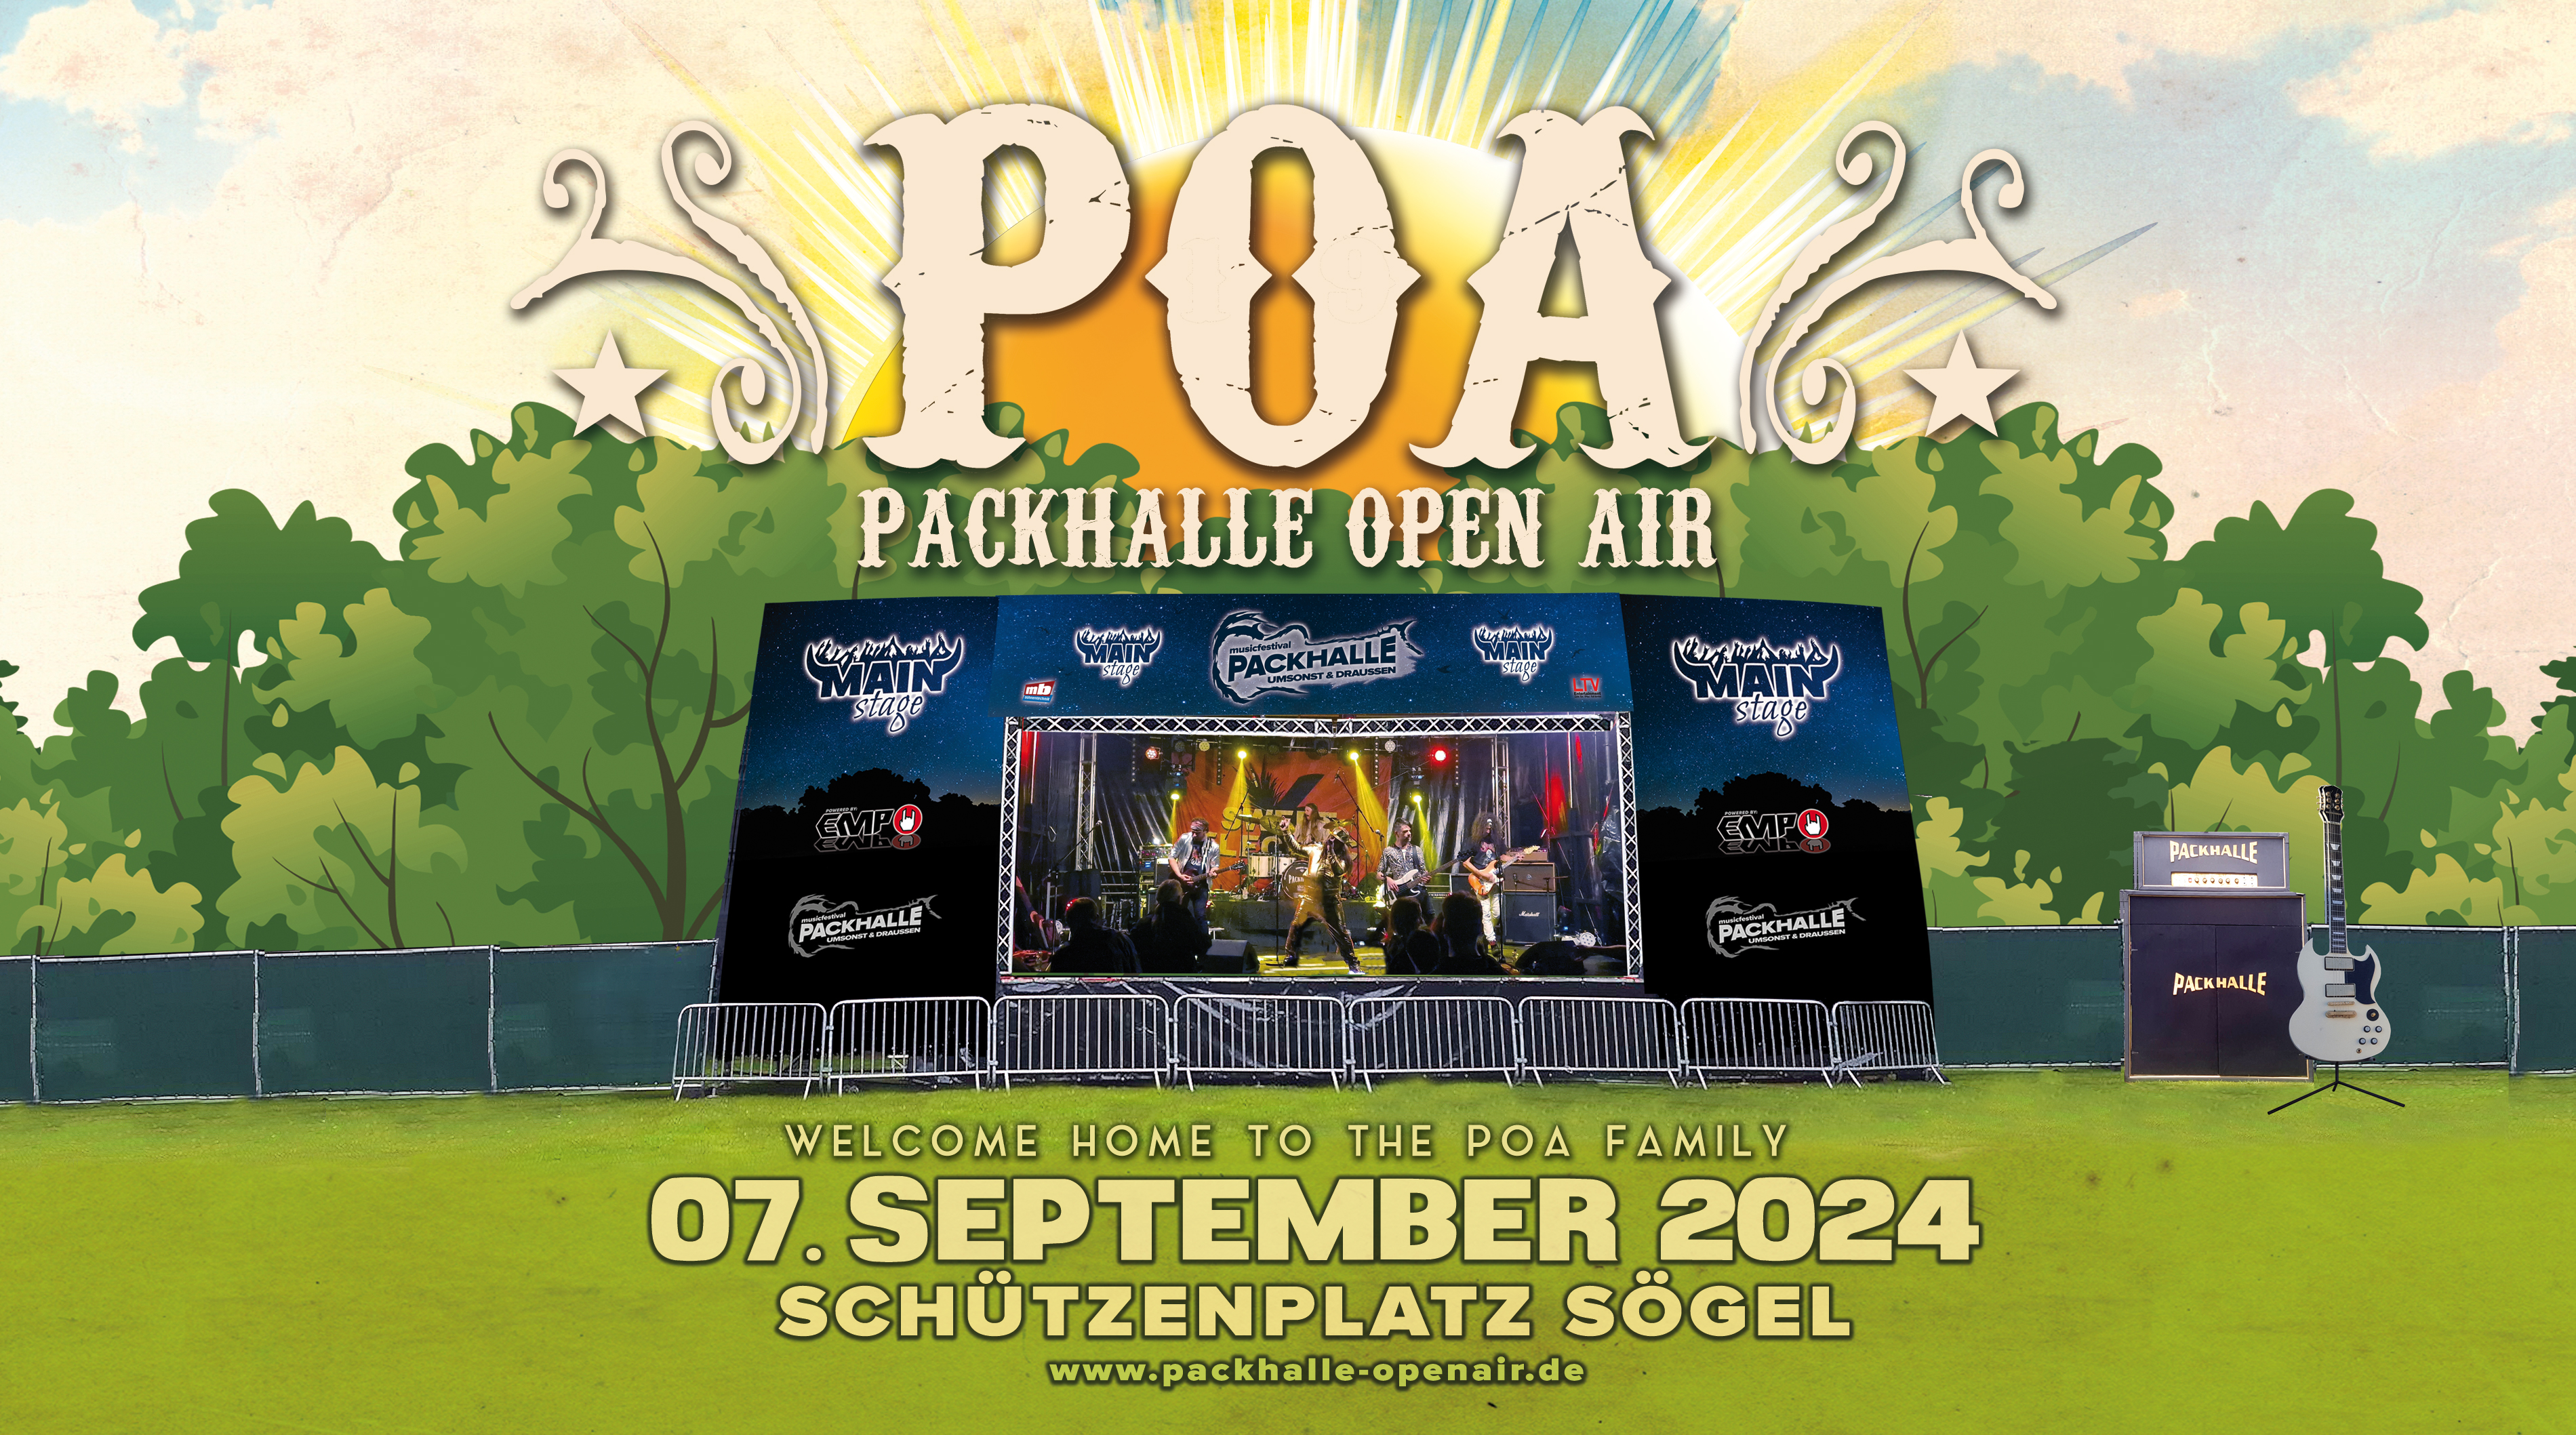 www.packhalle-openair.de